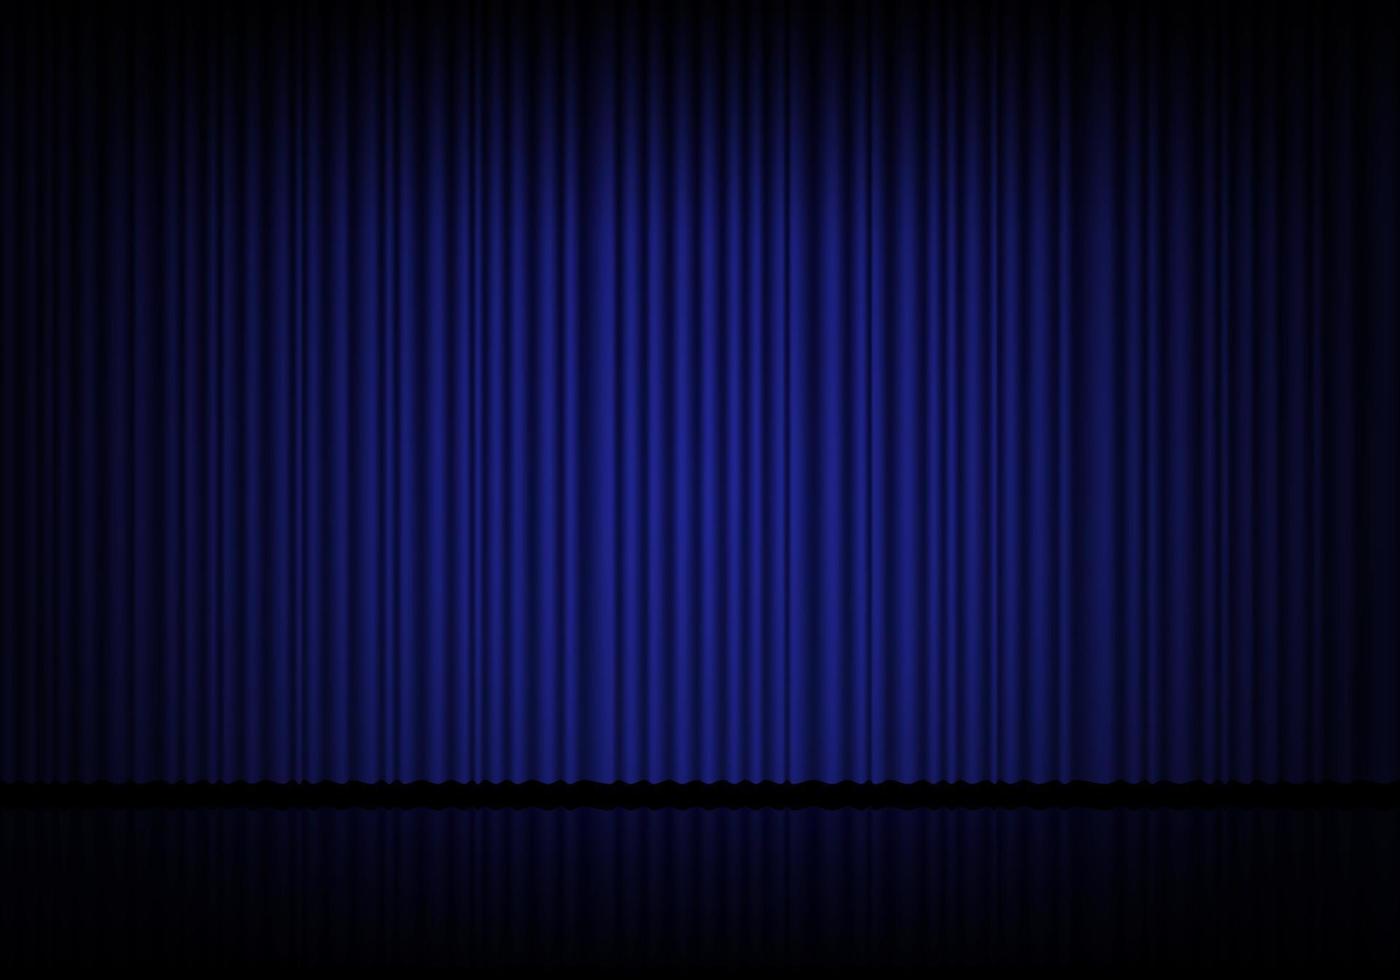 blå ridå opera, bio eller teater skede draperier. strålkastare på stängd sammet gardiner bakgrund. vektor illustration